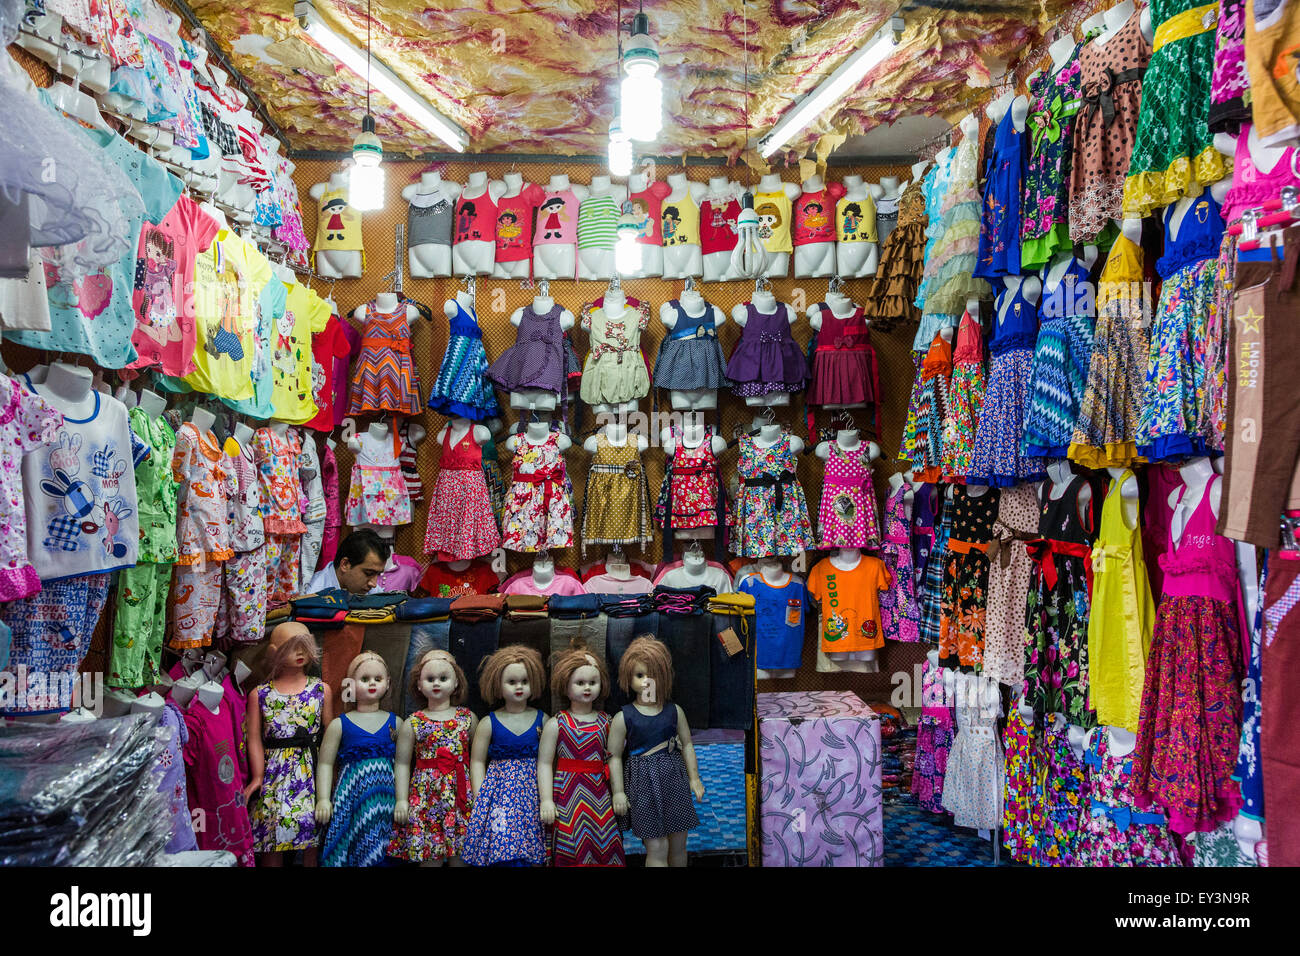 Tienda de ropa para niños, bazar, Zahedan, Irán Foto de stock